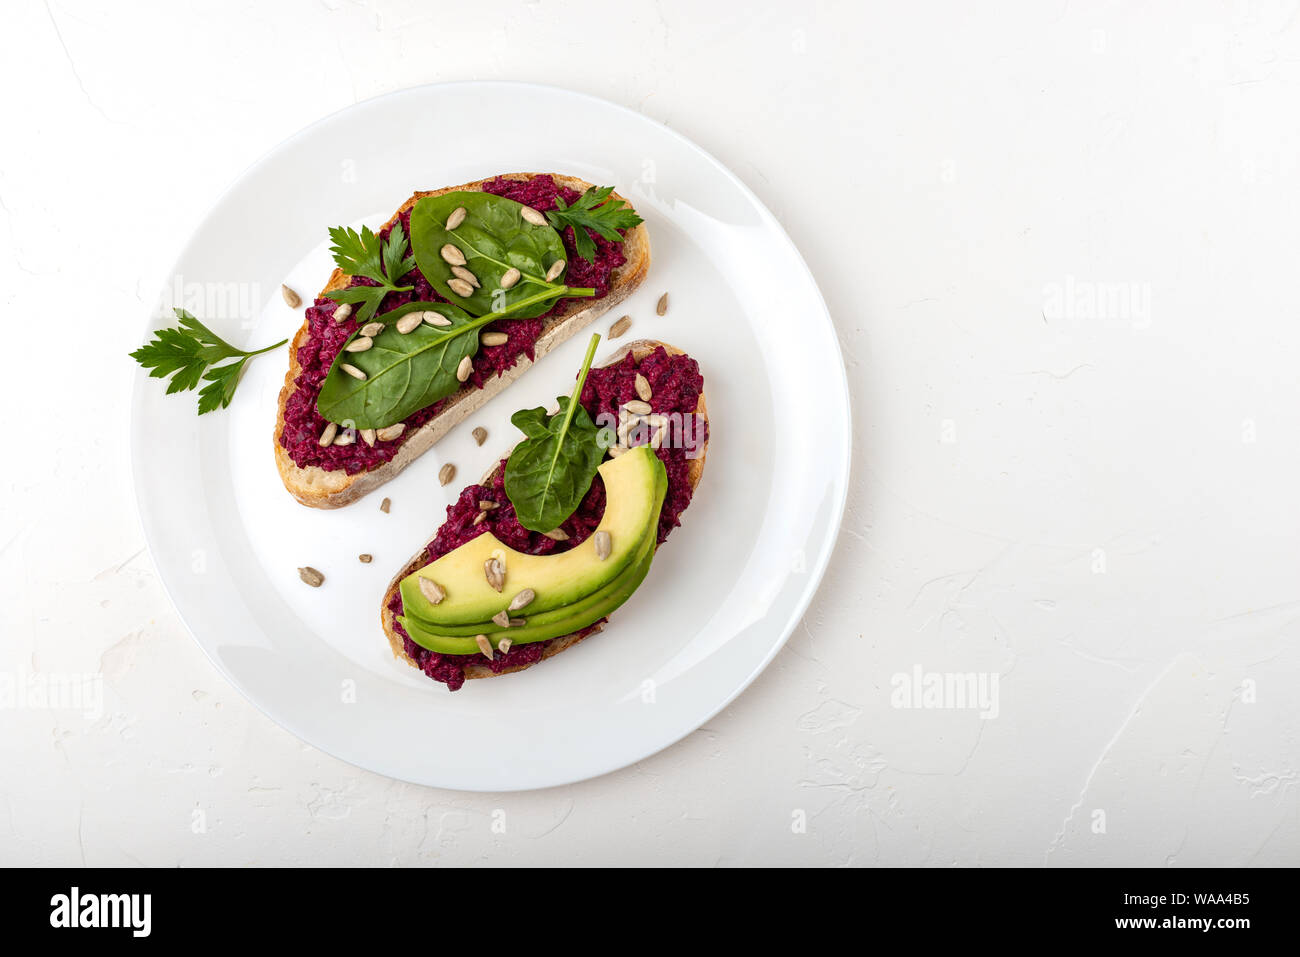 Bruschette con barbabietola hummus, avocado, spinaci e semi su una piastra bianca su sfondo bianco. Foto Stock